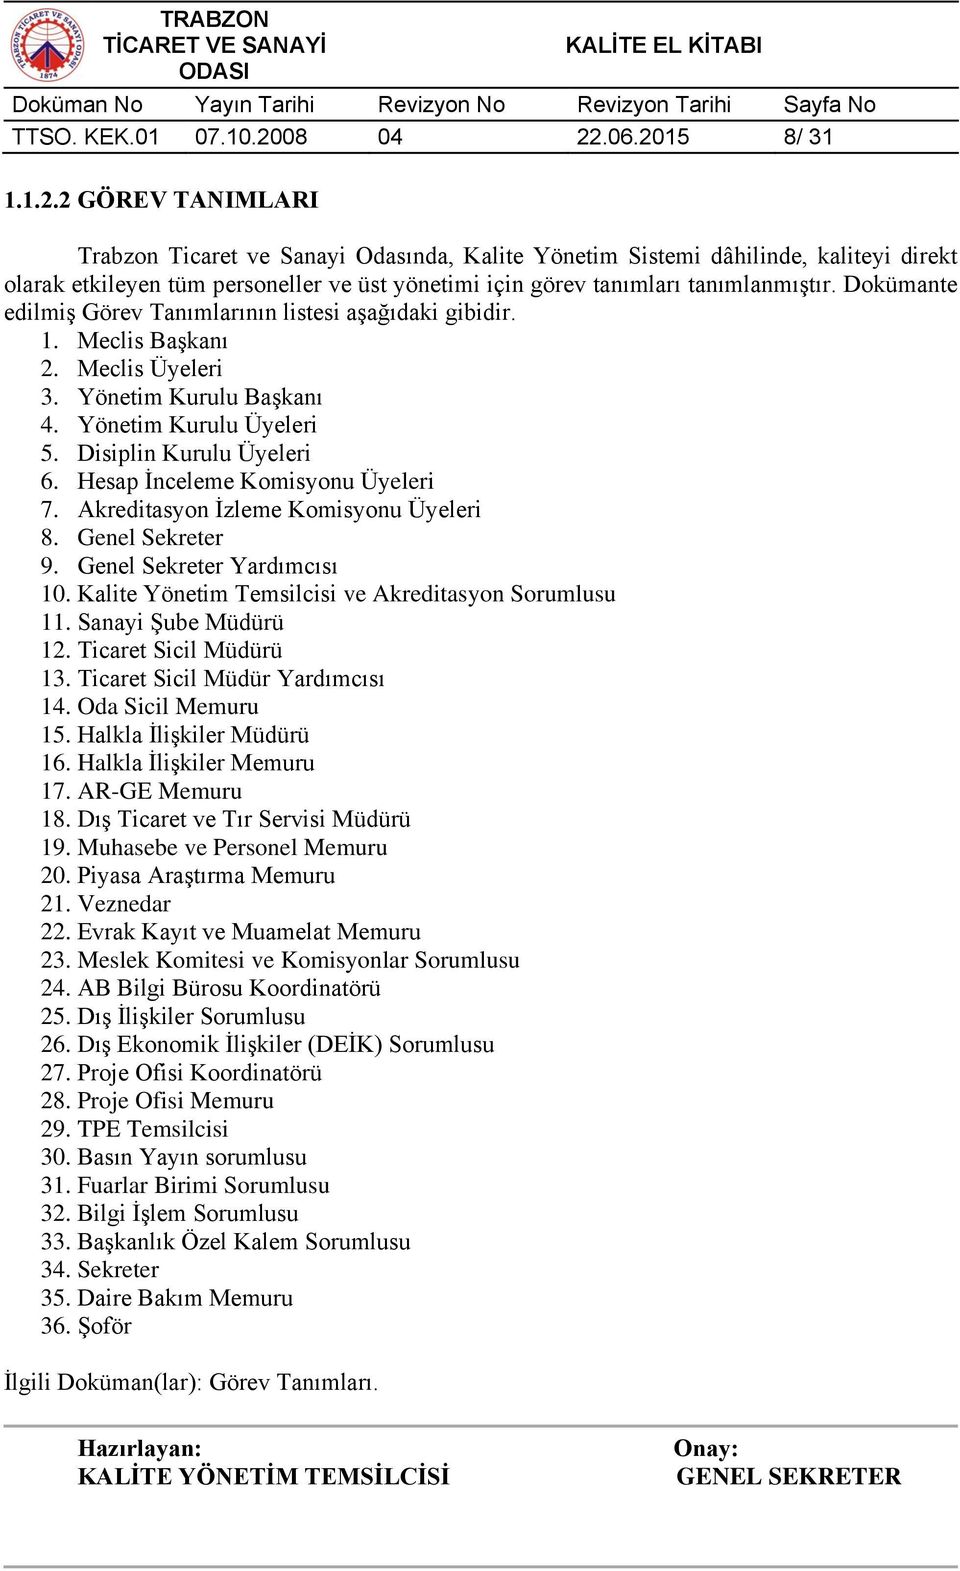 Dokümante edilmiş Görev Tanımlarının listesi aşağıdaki gibidir. 1. Meclis Başkanı 2. Meclis Üyeleri 3. Yönetim Kurulu Başkanı 4. Yönetim Kurulu Üyeleri 5. Disiplin Kurulu Üyeleri 6.